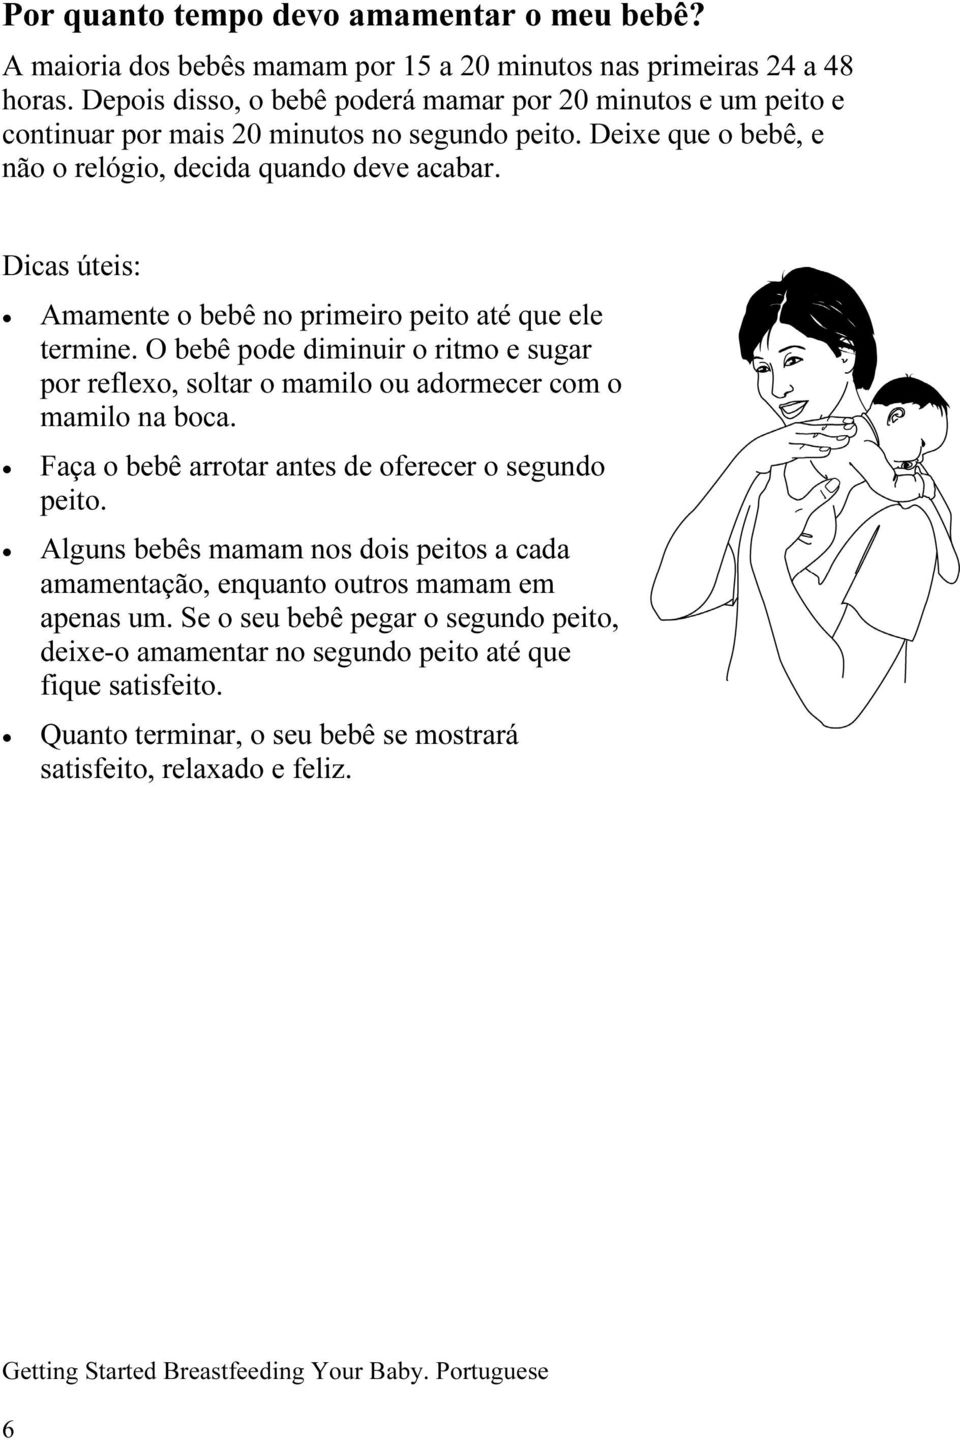 Dicas úteis: Amamente o bebê no primeiro peito até que ele termine. O bebê pode diminuir o ritmo e sugar por reflexo, soltar o mamilo ou adormecer com o mamilo na boca.